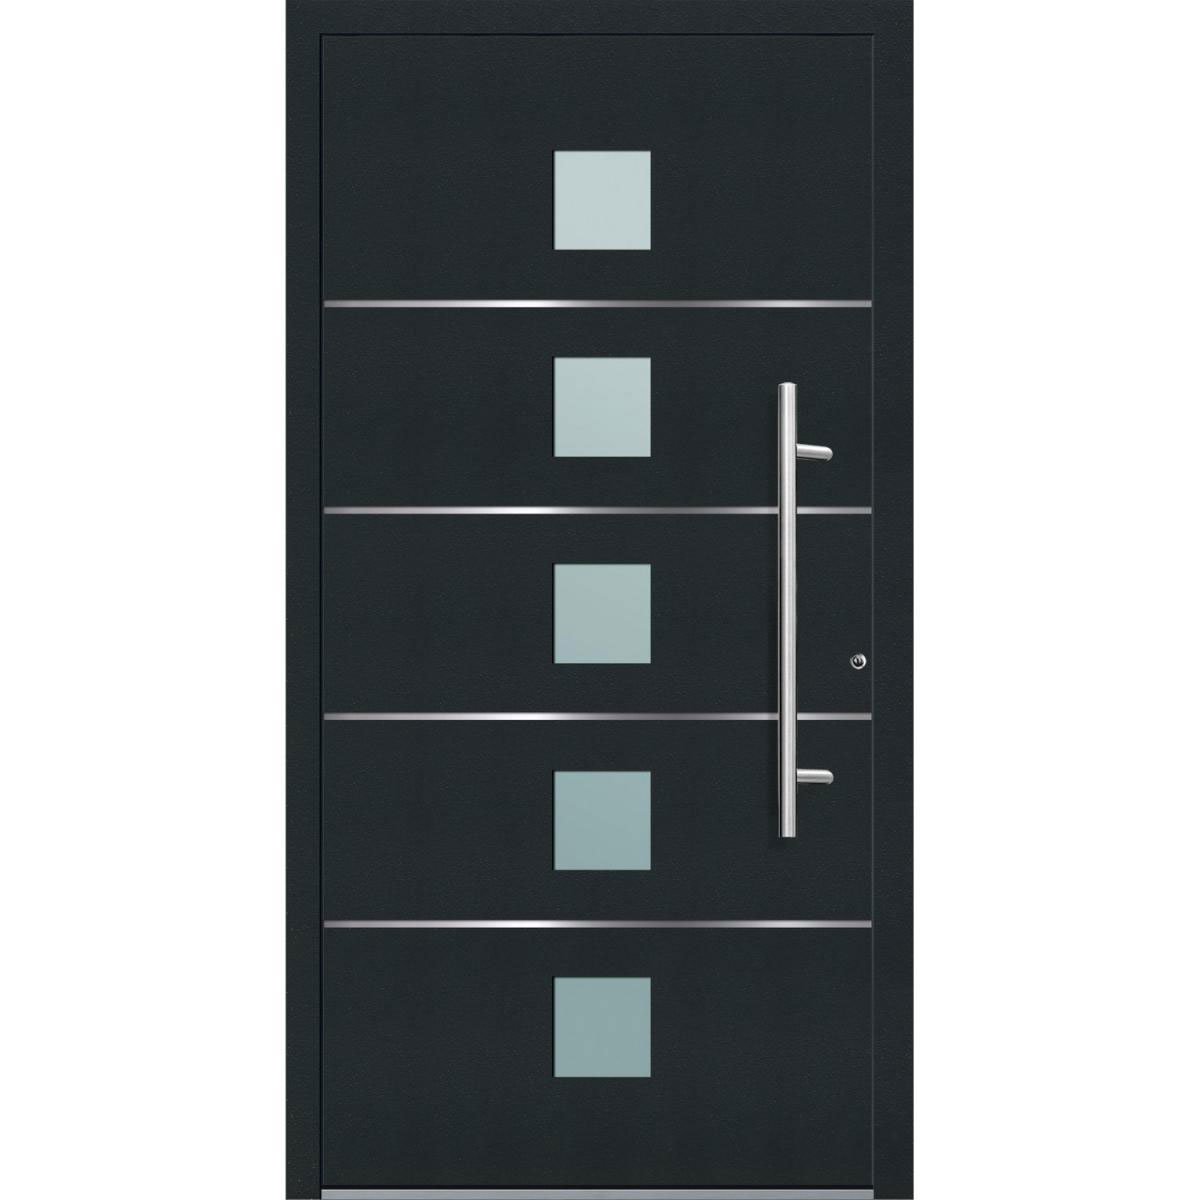 Aluminium Sicherheits-Haustür „Triest Exklusiv“, 75mm, anthrazit, 100x210 cm, Anschlag rechts, inkl. Griffset